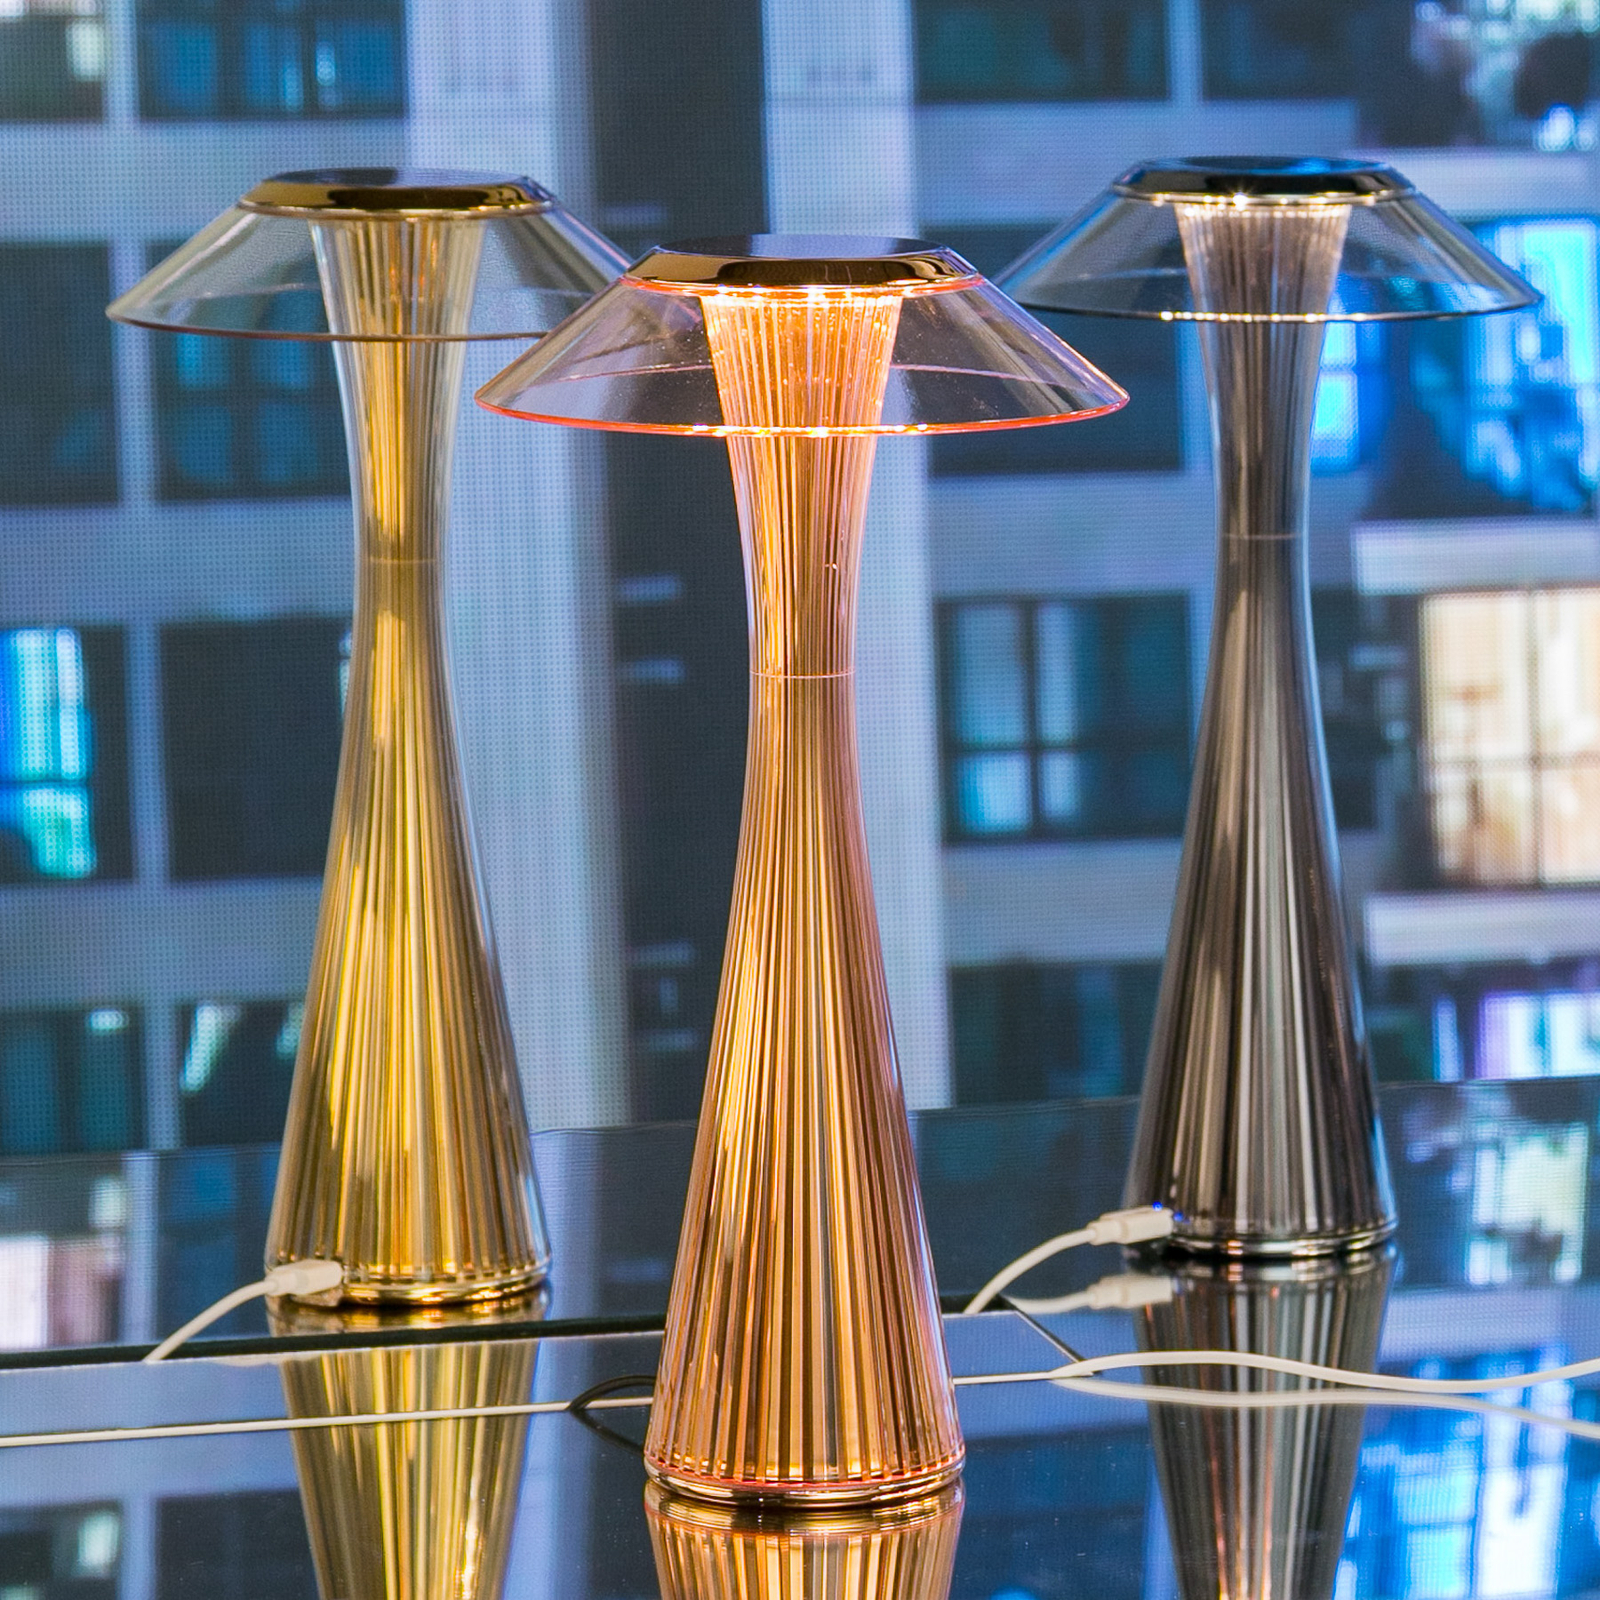 Kartell Space - LED designer table lamp, copper